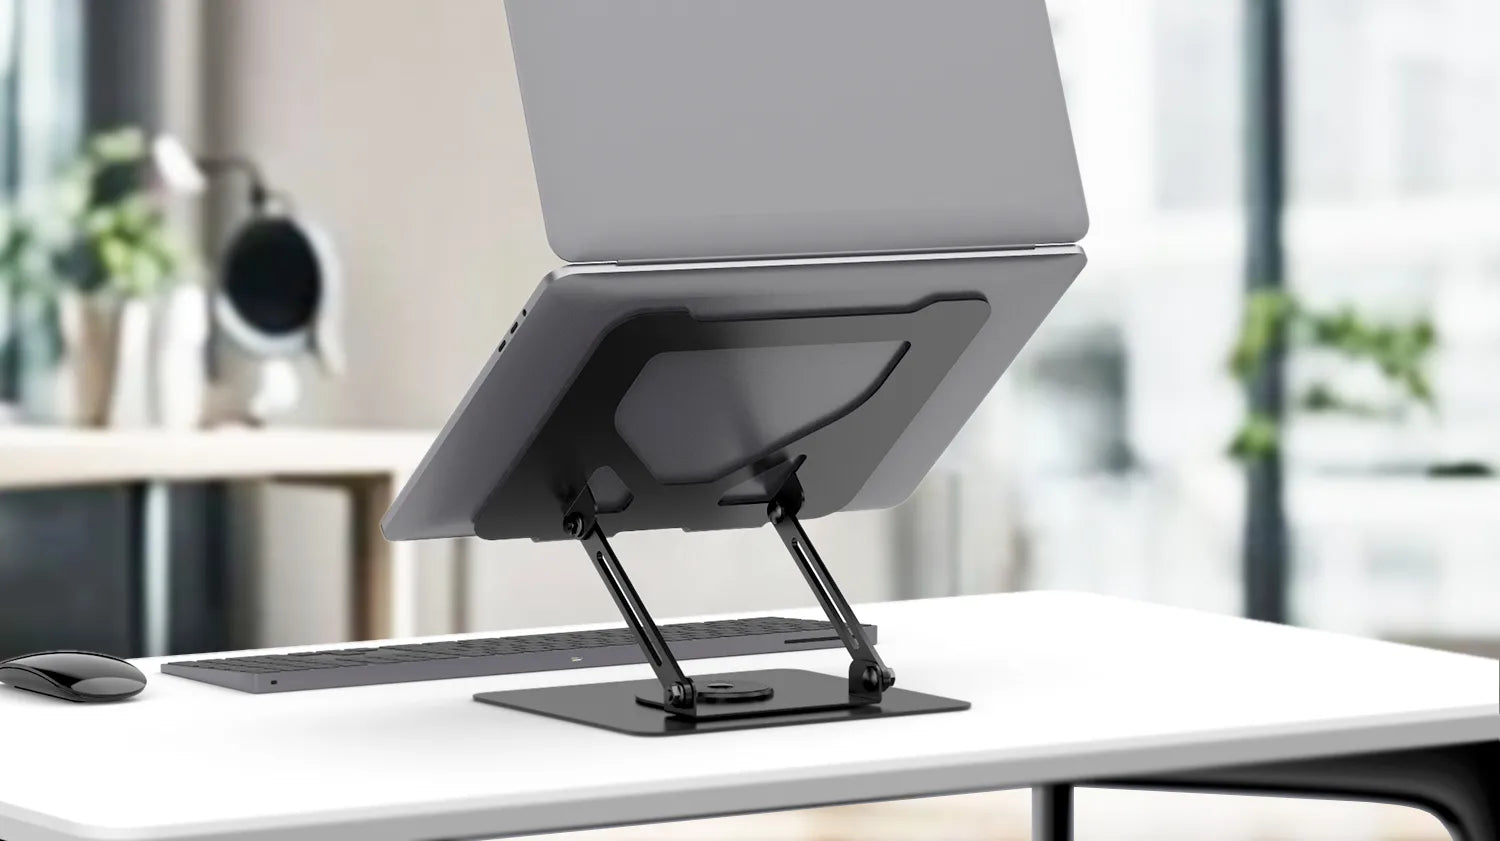 Sleek Flujo laptop stand elevating laptop for ergonomic desk setup.